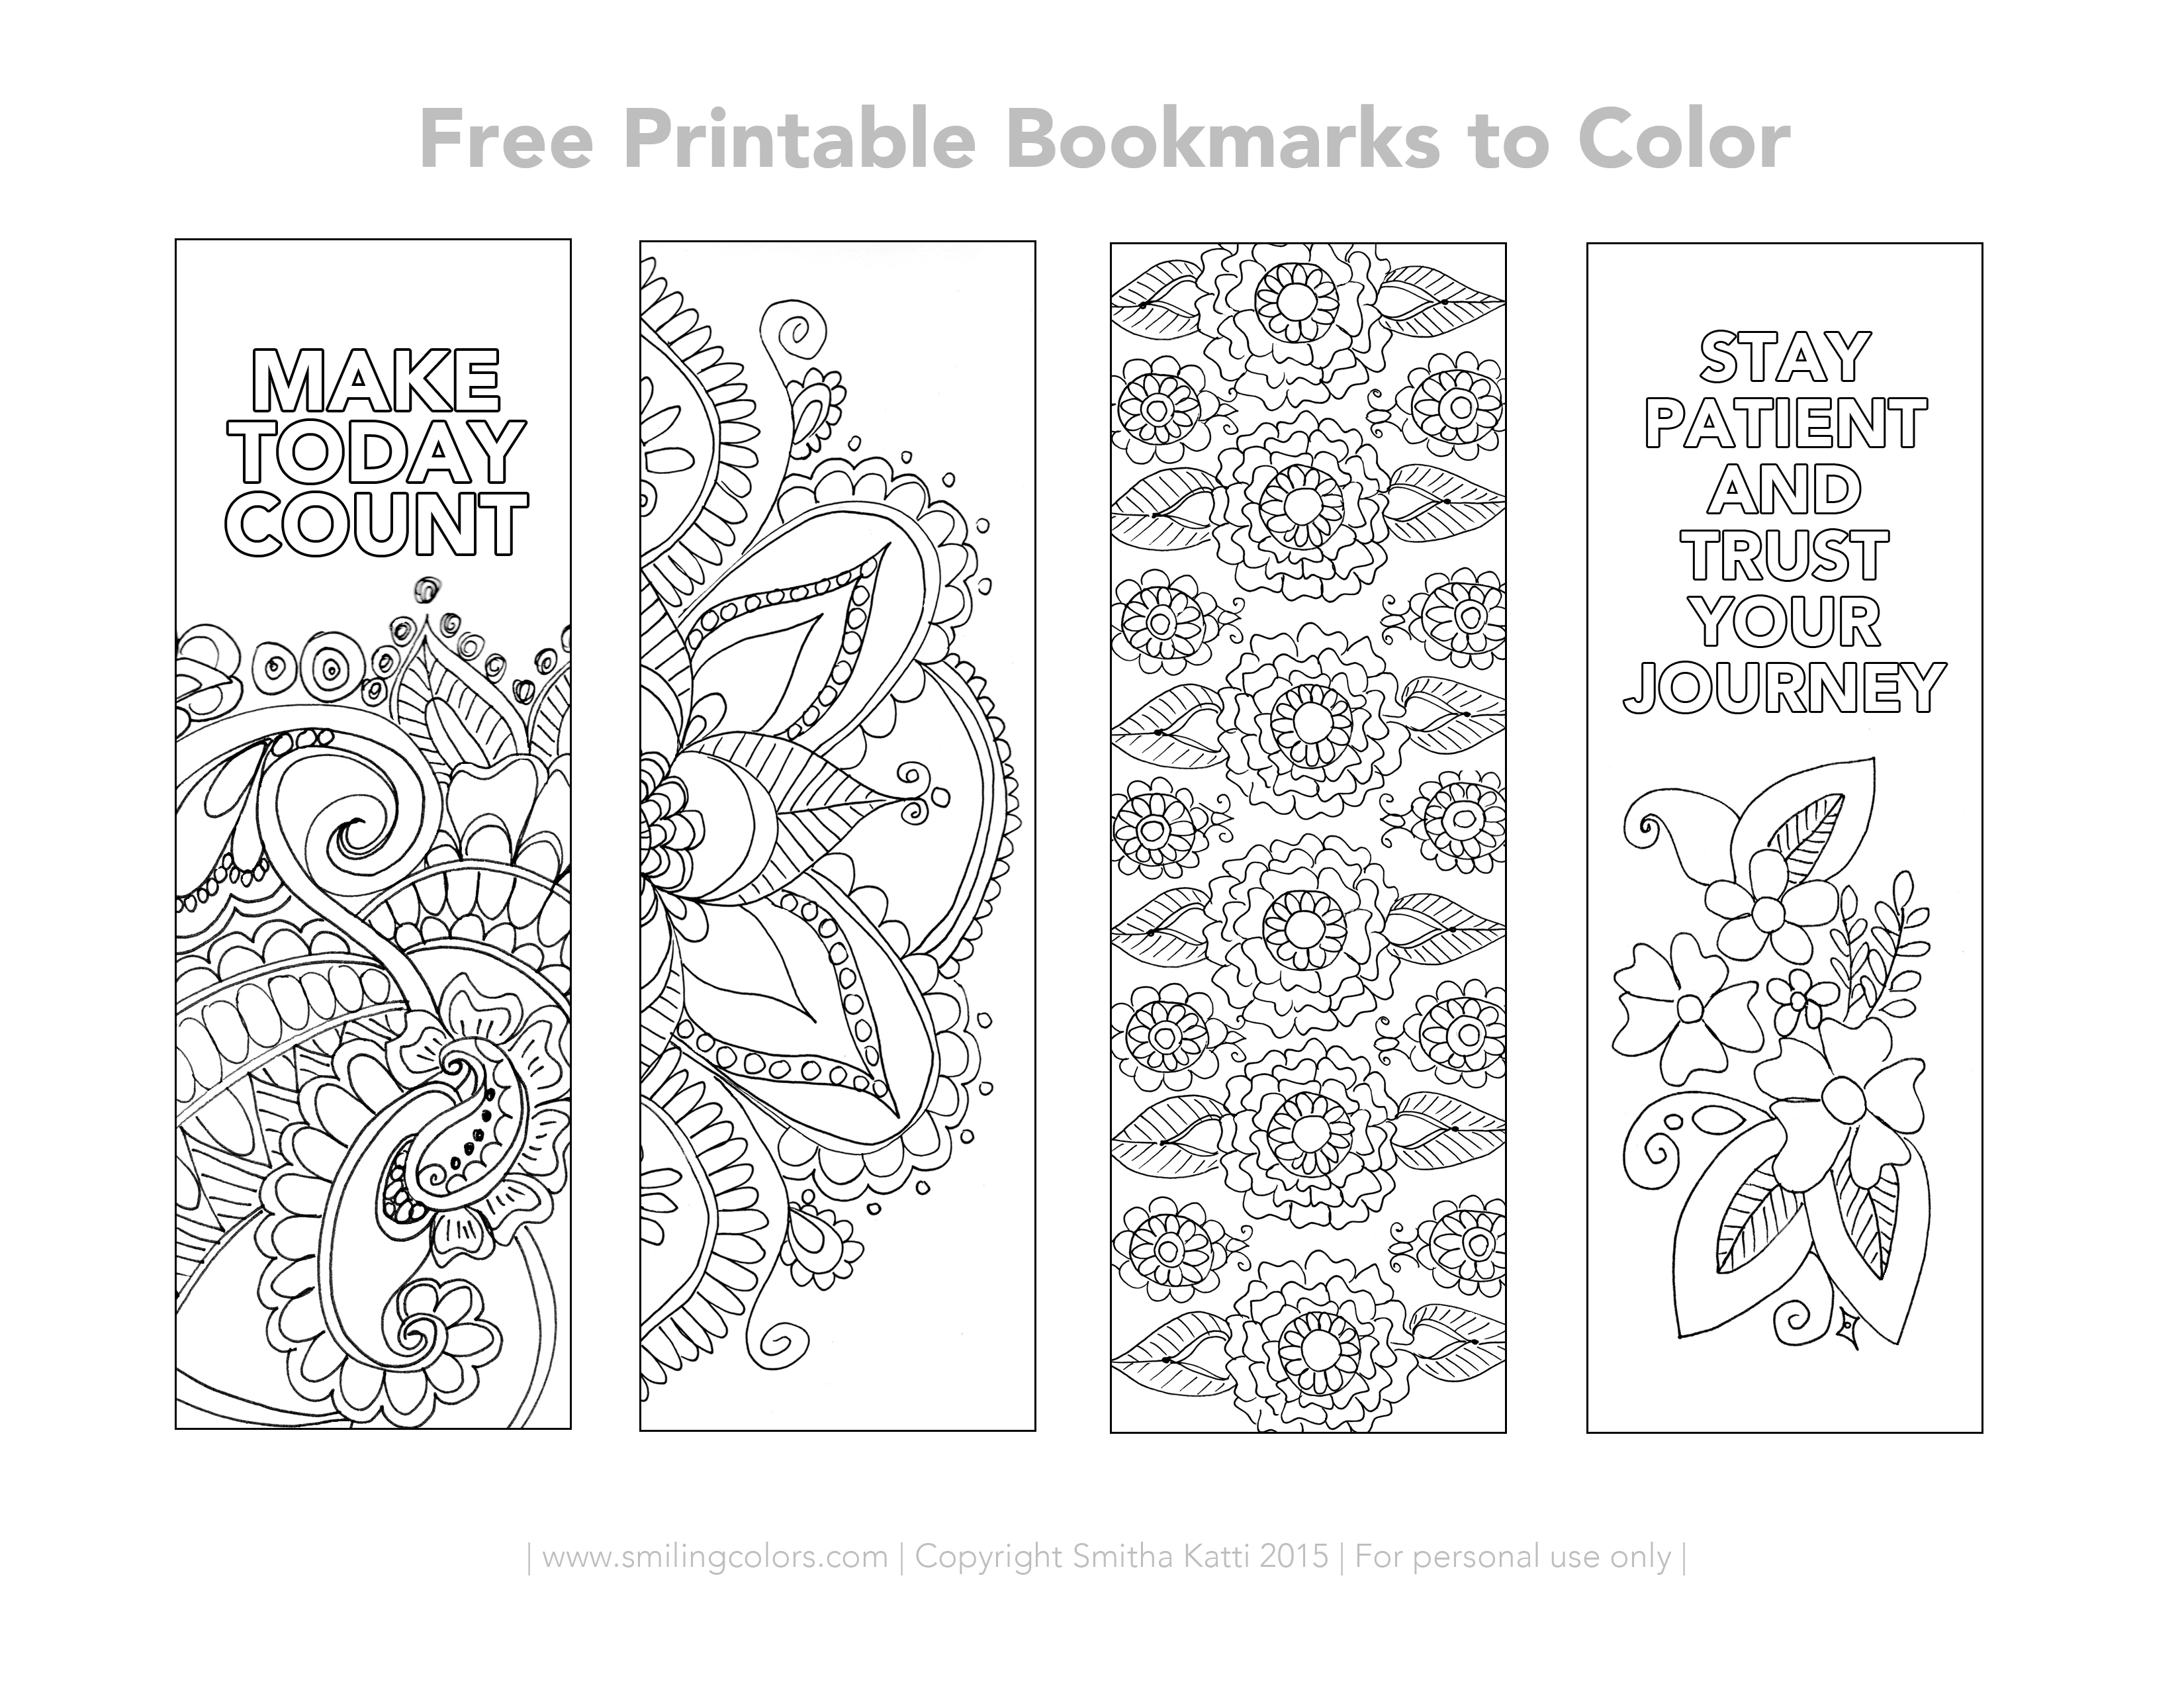 Free Printable Bookmarks To Color - Smitha Katti - Free Printable Bookmarks Templates